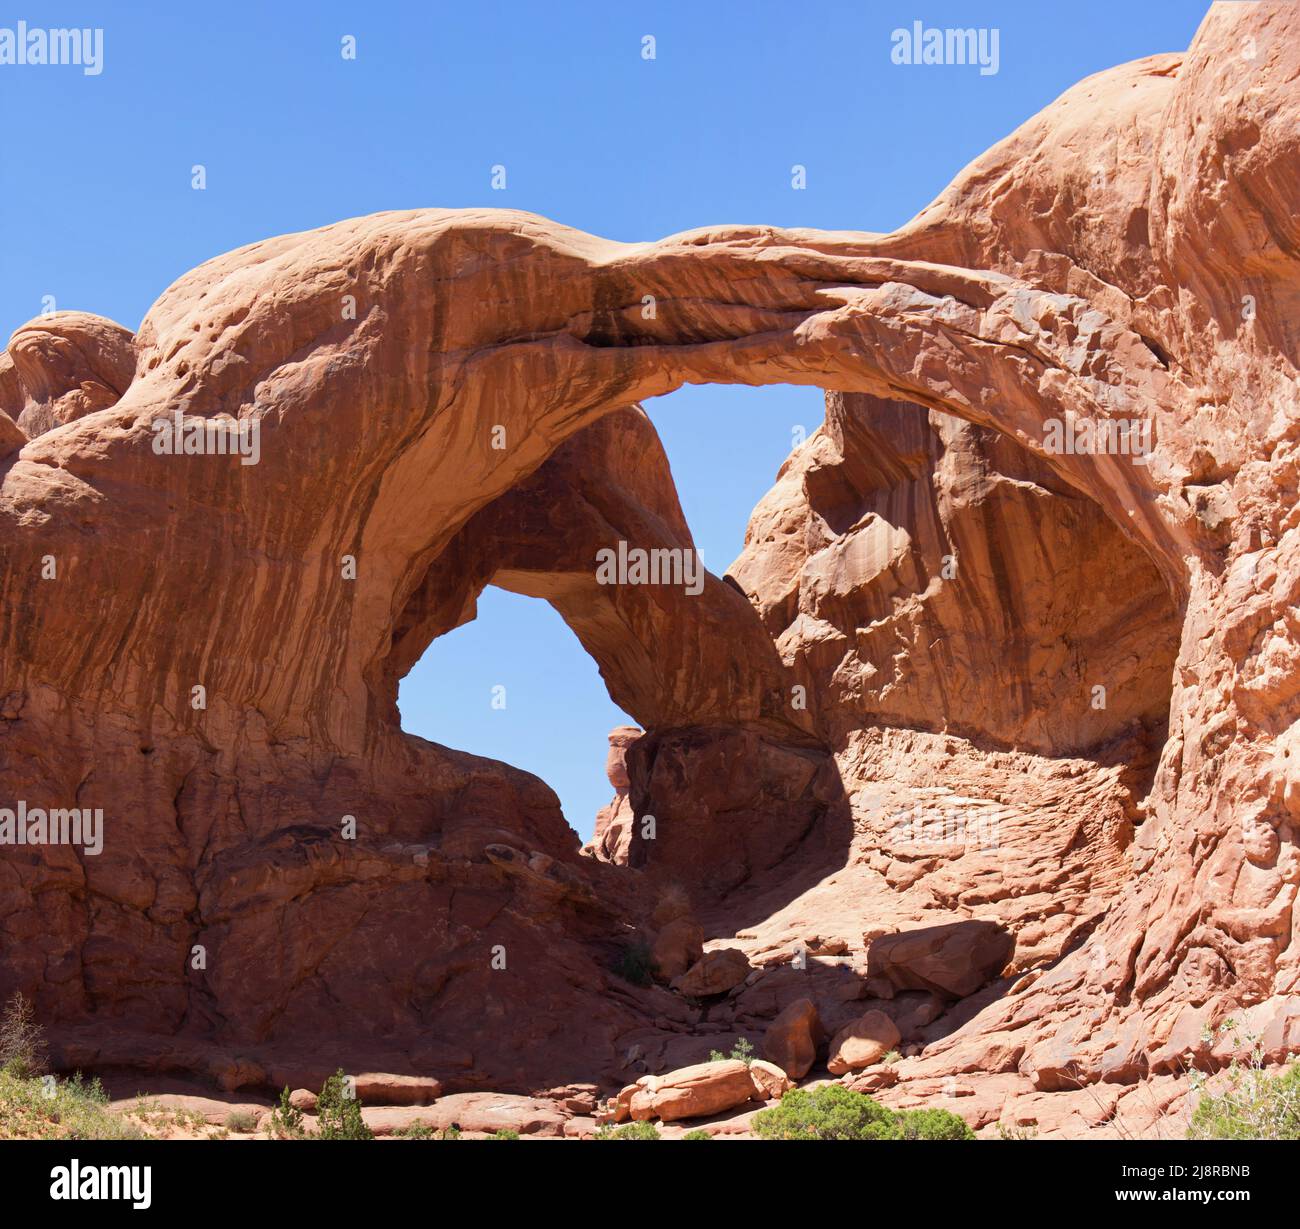 Double Arch dans le parc national d'Arches Utah America. Un site remarquable. Arche en pierre naturelle devant Blue Sky. Haute résolution au format affiche. Banque D'Images